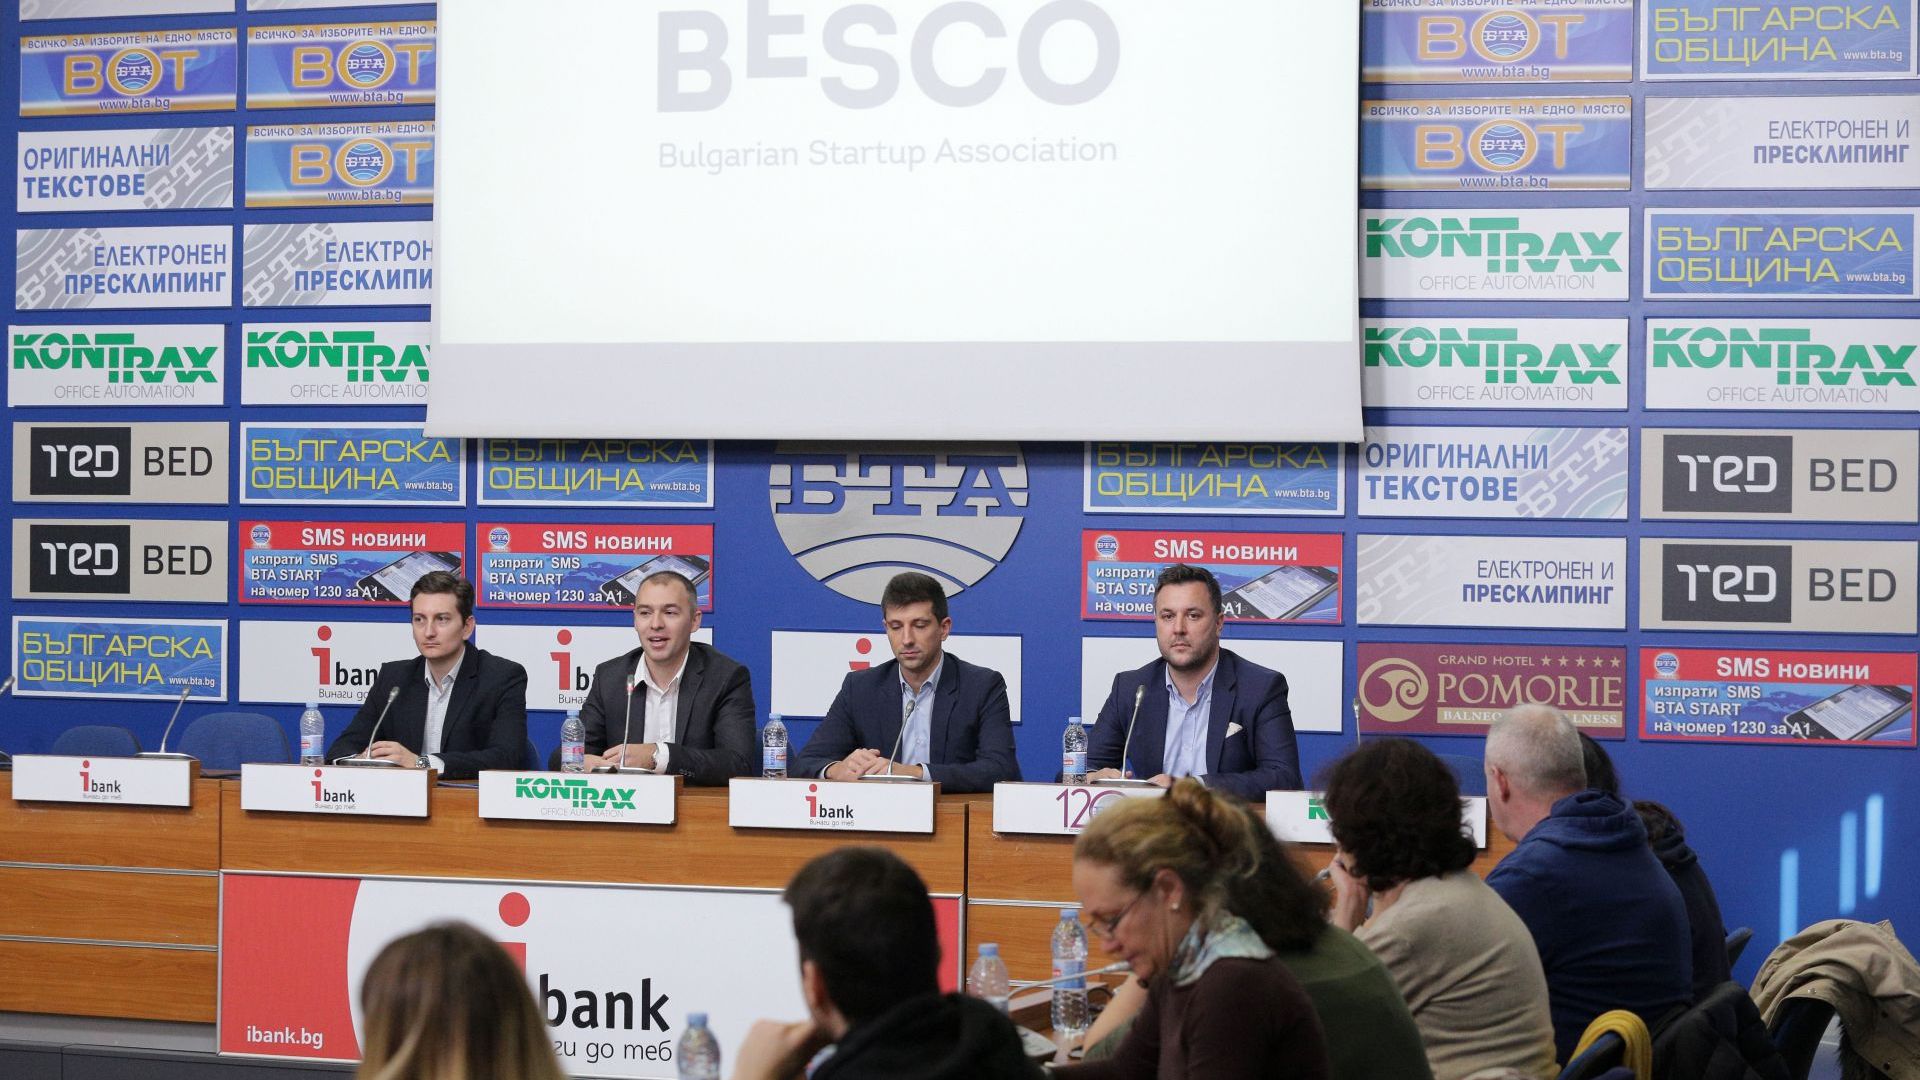 Ръководството на BESCO (Българската стартъп асоциация) призова вносителите на законопроекта,